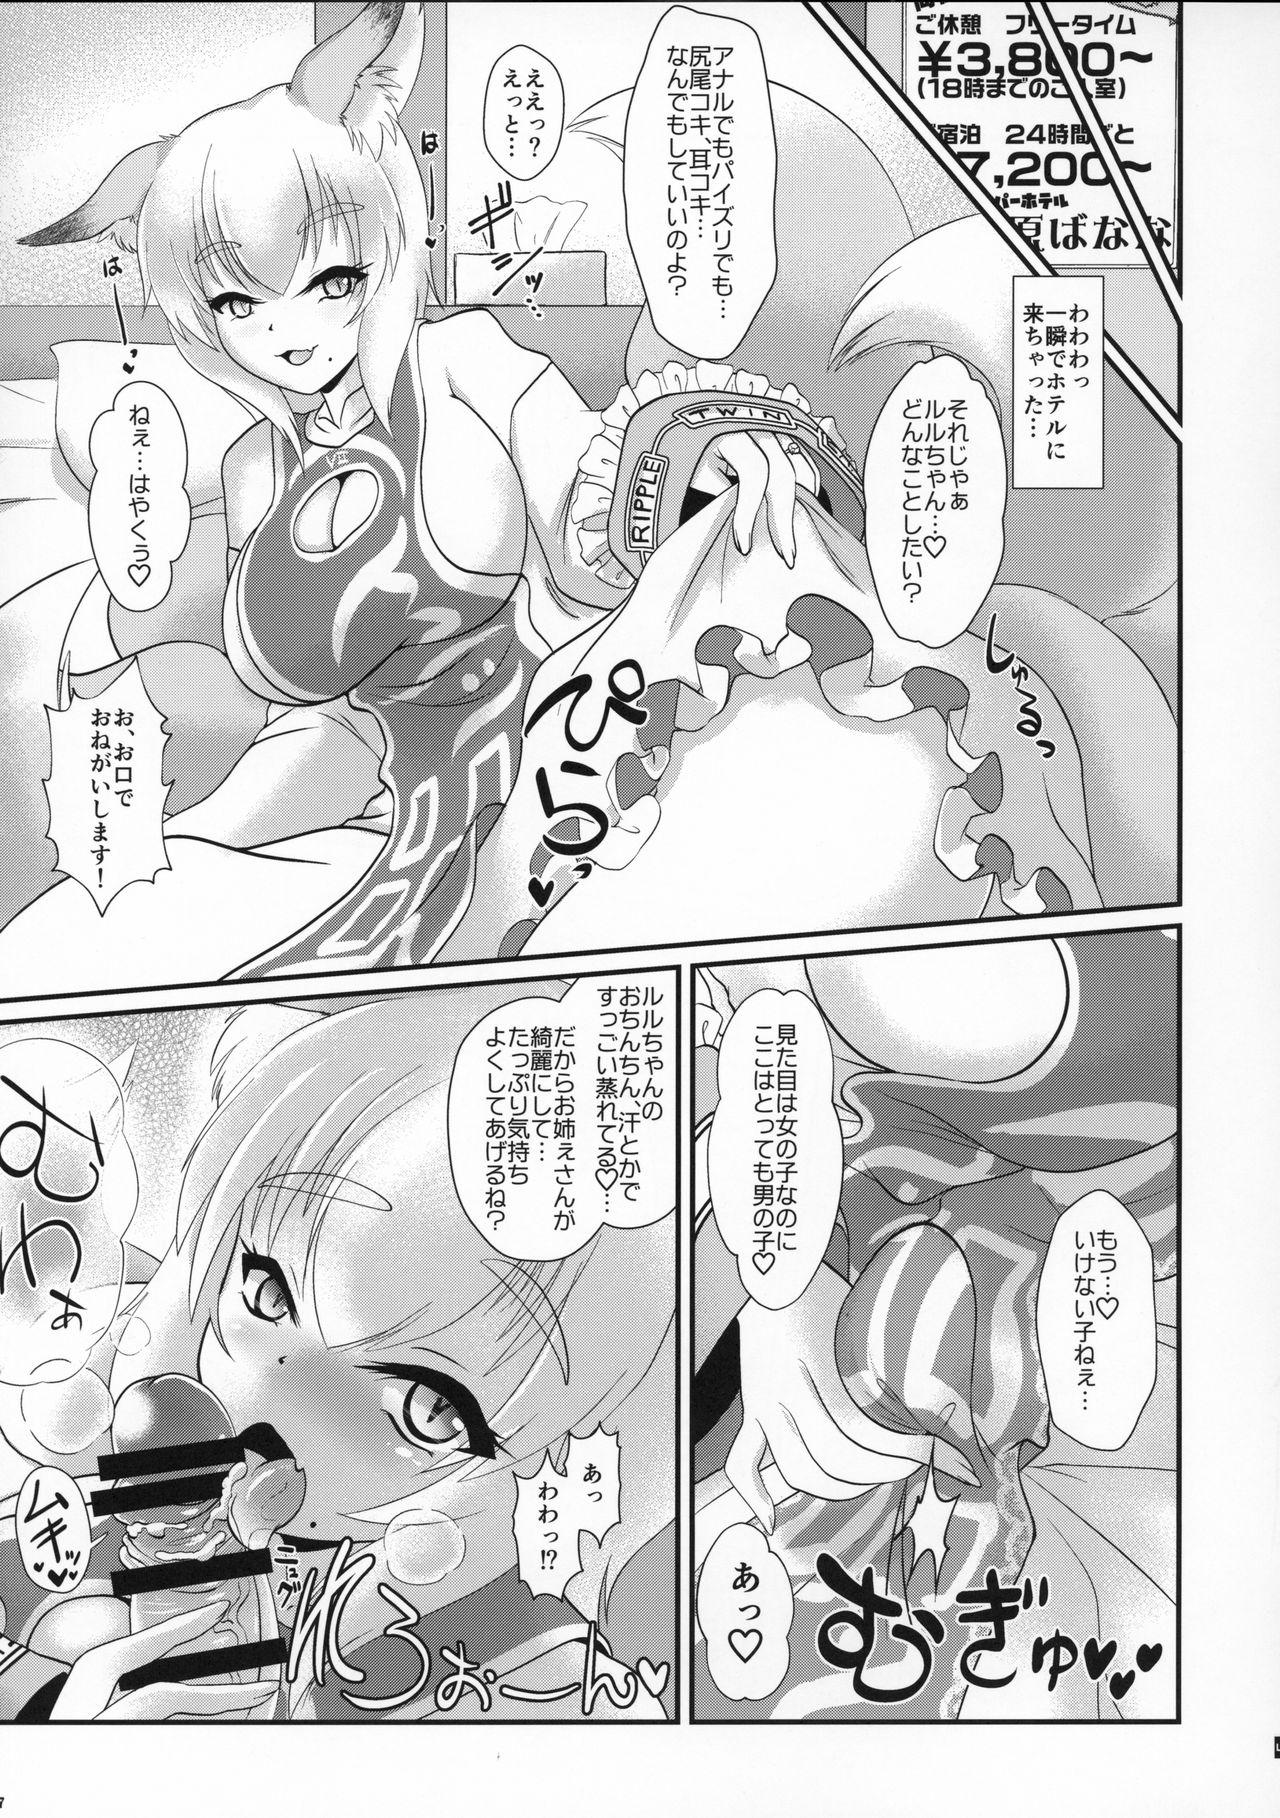 Thong Natsu no Touhou Manga Matsuri Great Yakumo Ran VS Ran-sama CJD - Touhou project Van - Page 6